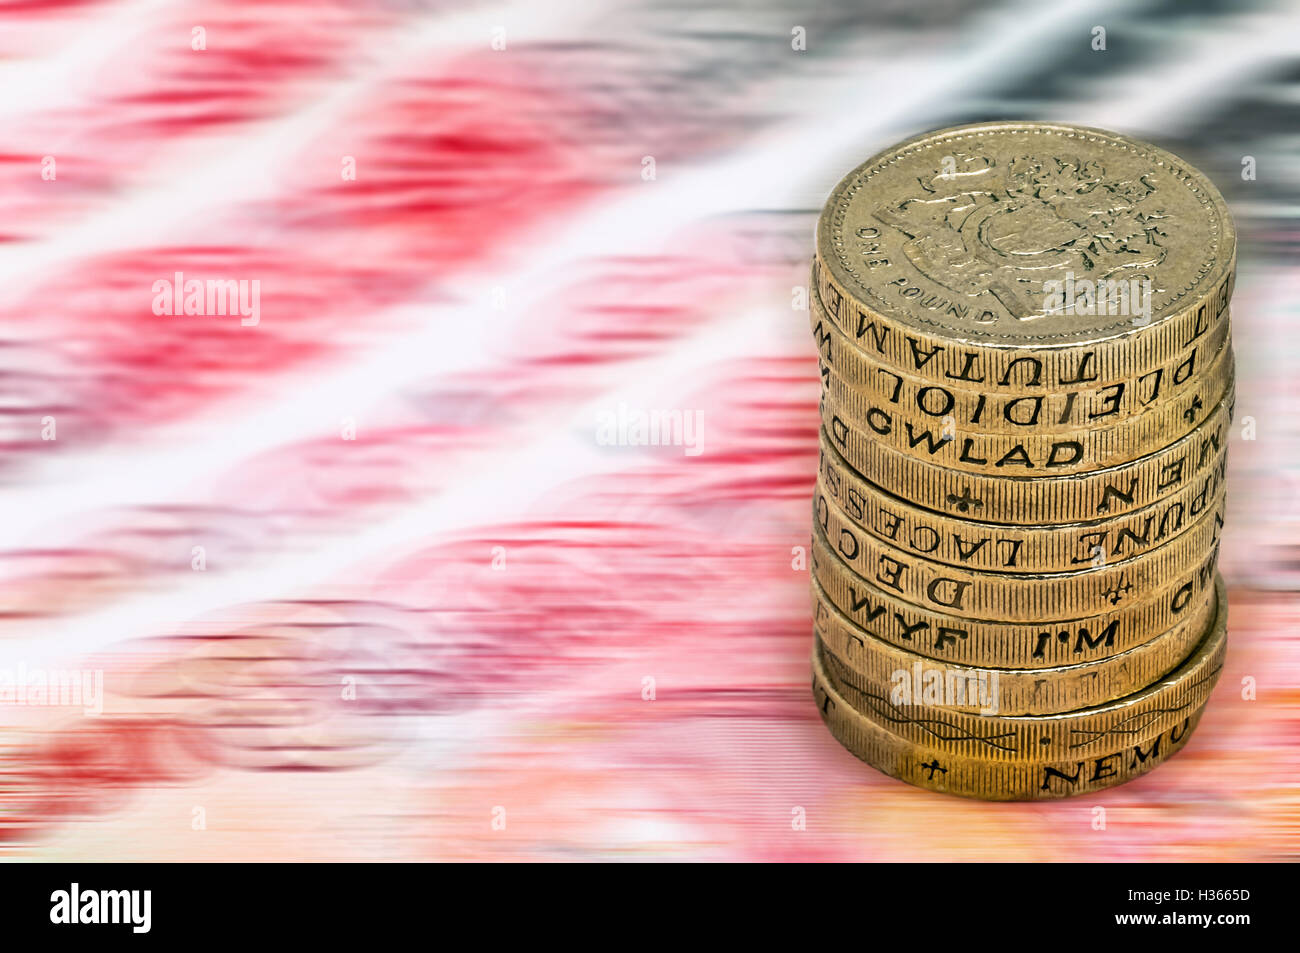 Sterling Pound dévaluation d'amortissement valeur réduction concept libre macro-vision lors d'un pile de monnaie pièces livre Banque D'Images